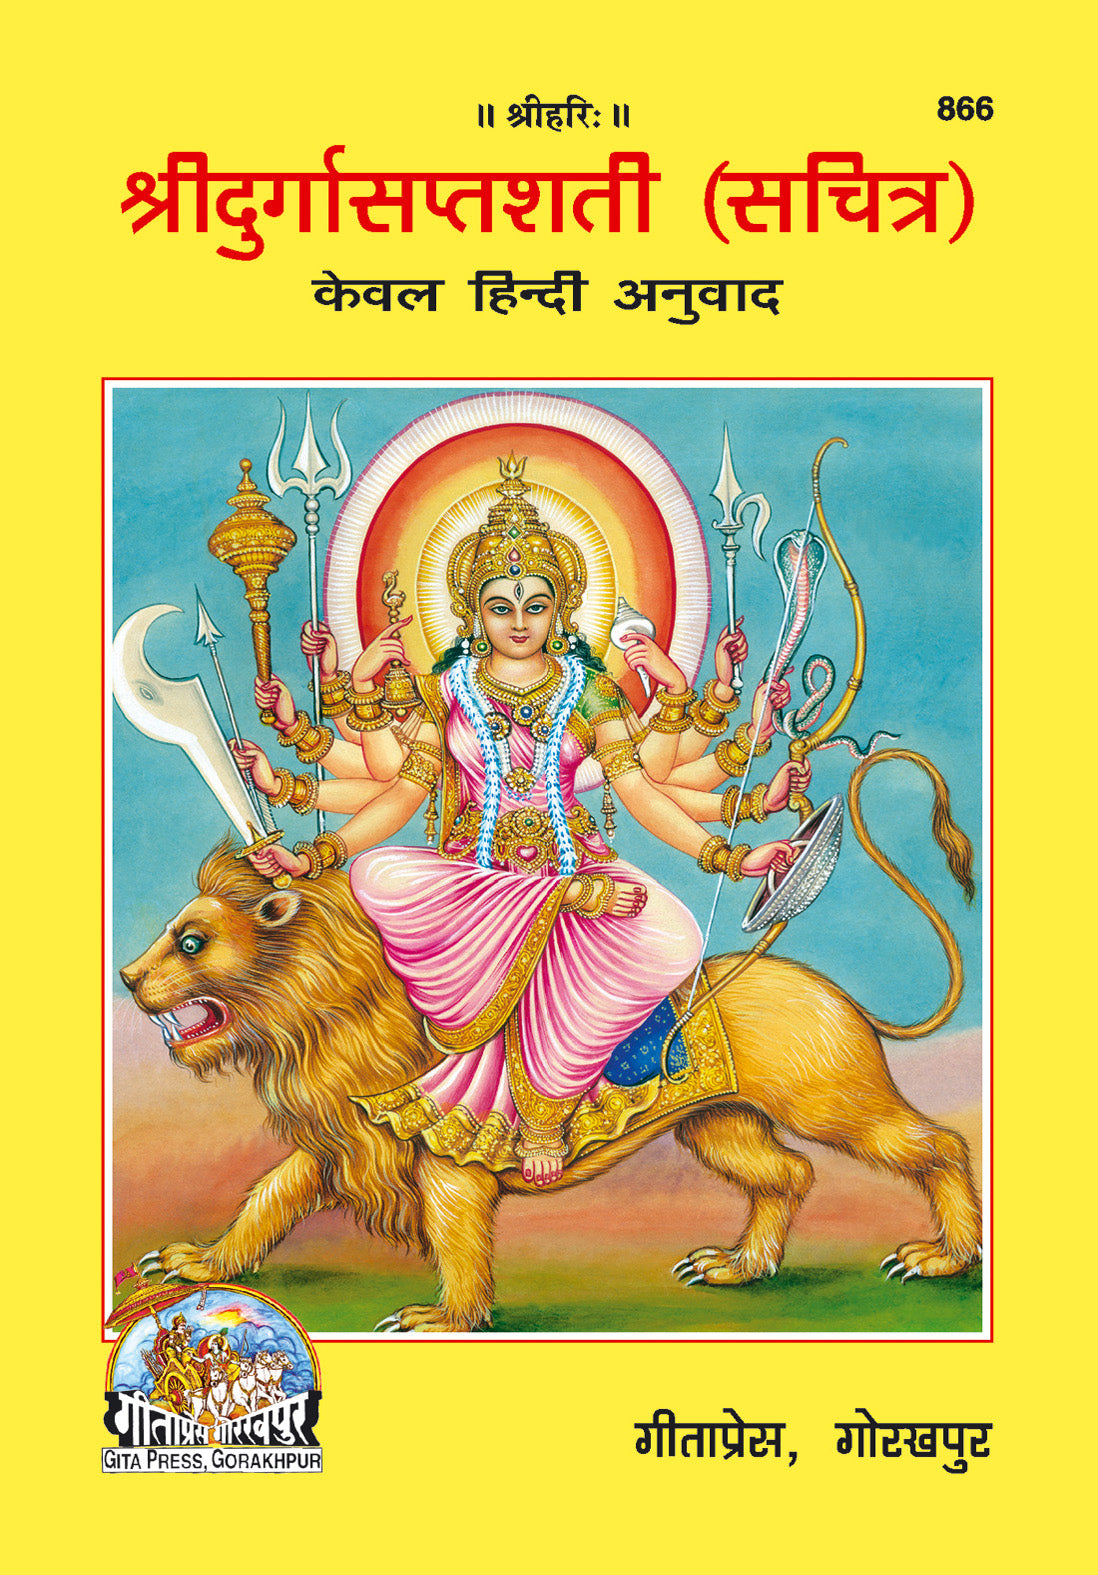 SANATAN  Sachitra Shri Durga Saptashati (Only Hindi) by Gita Press